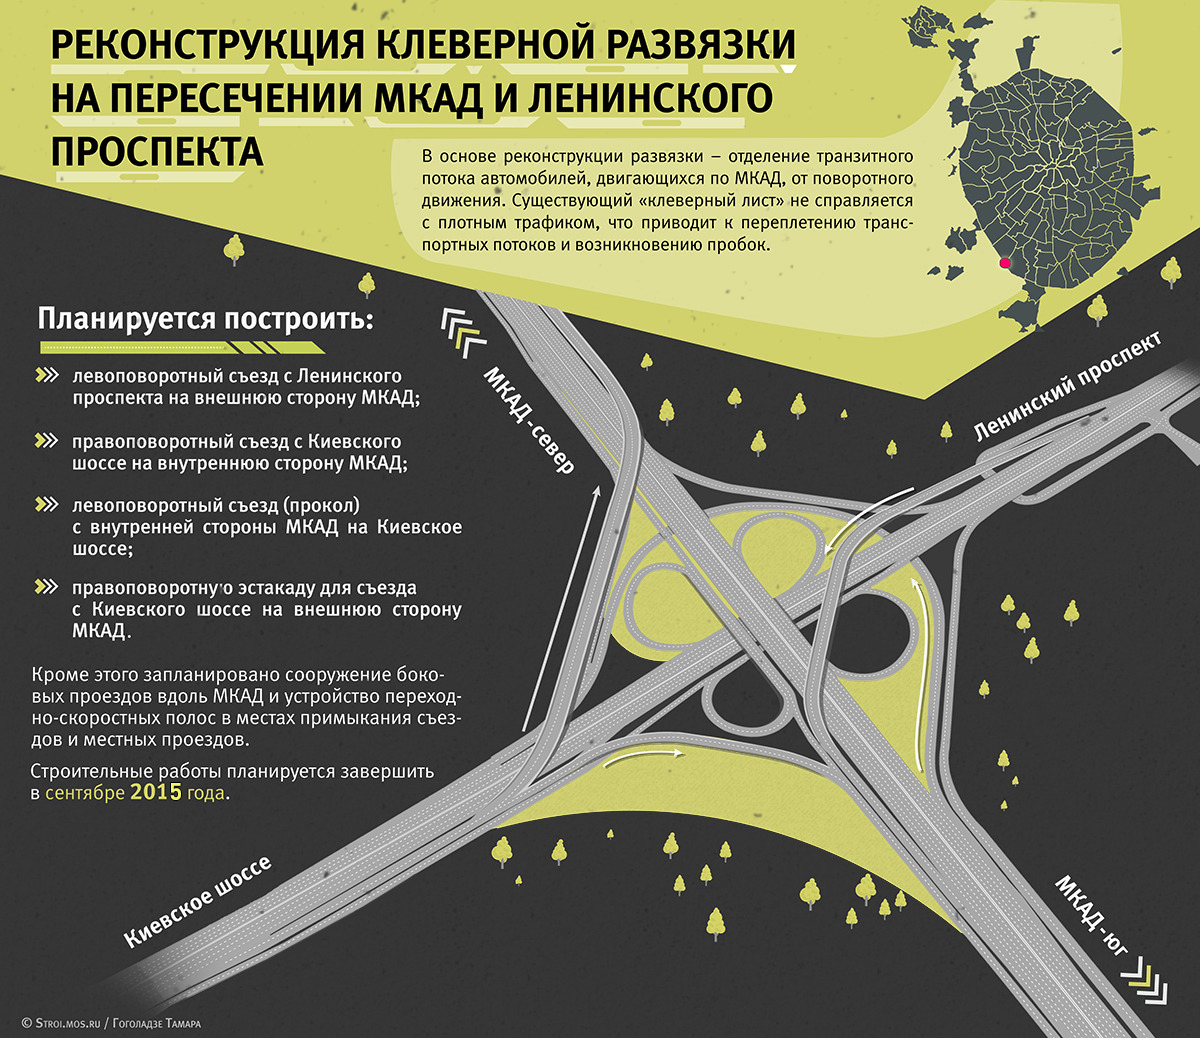 Транспортная развязка на пересечении Ленинского проспекта и МКАД поедет свободнее в сентябре 2015 года